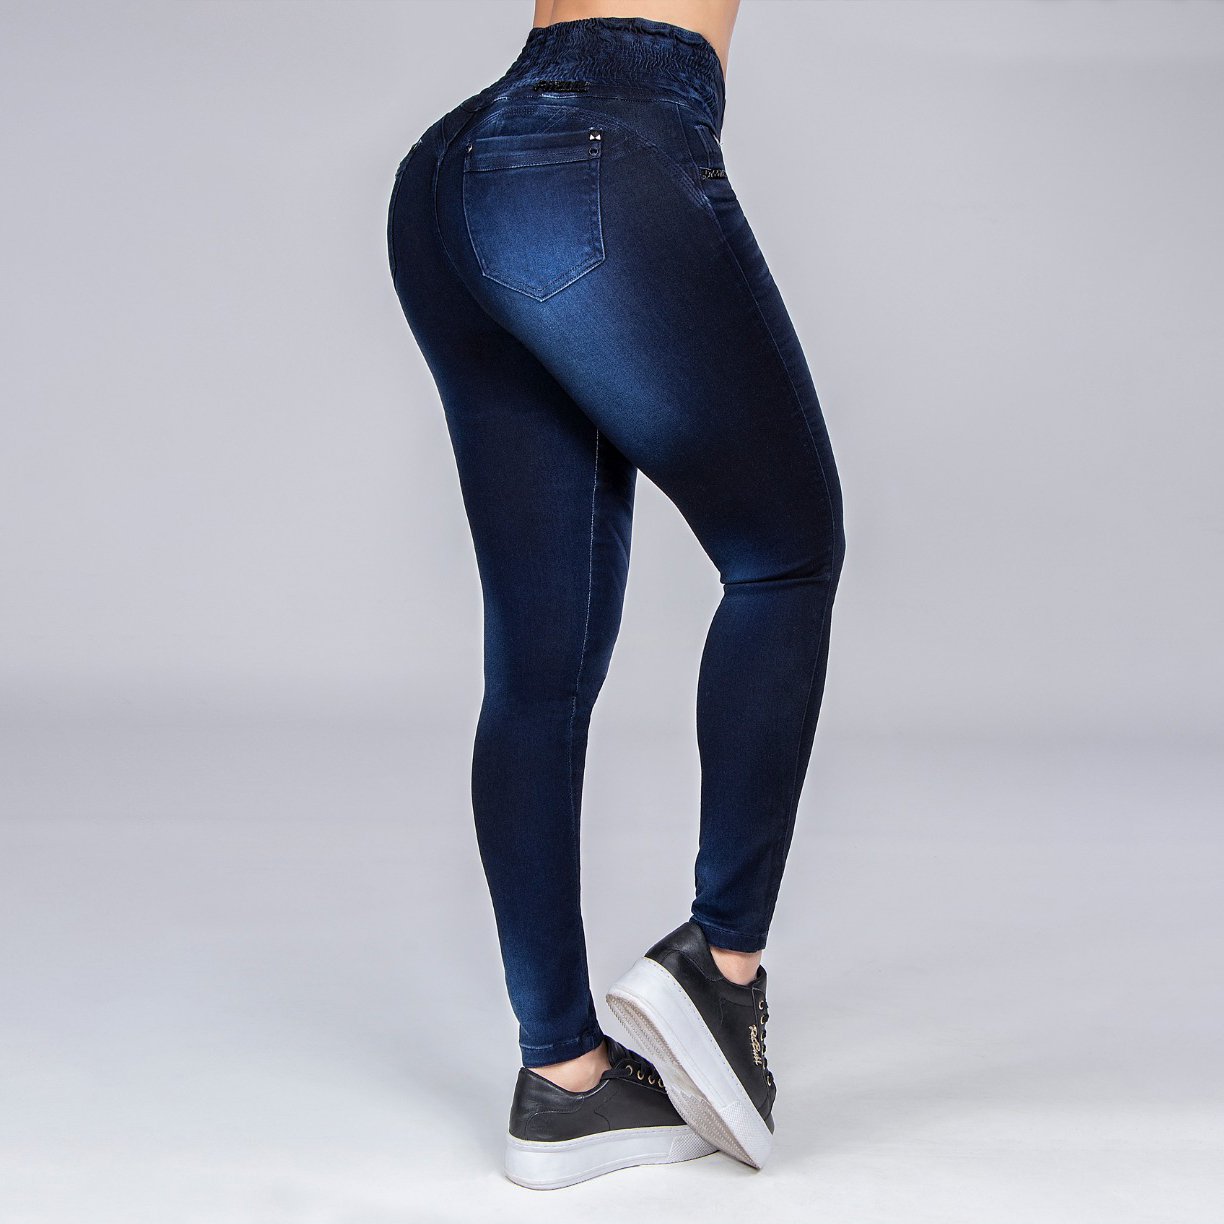 Calça Pit Bull Jeans Skinny com Elástico no Cós - 32888